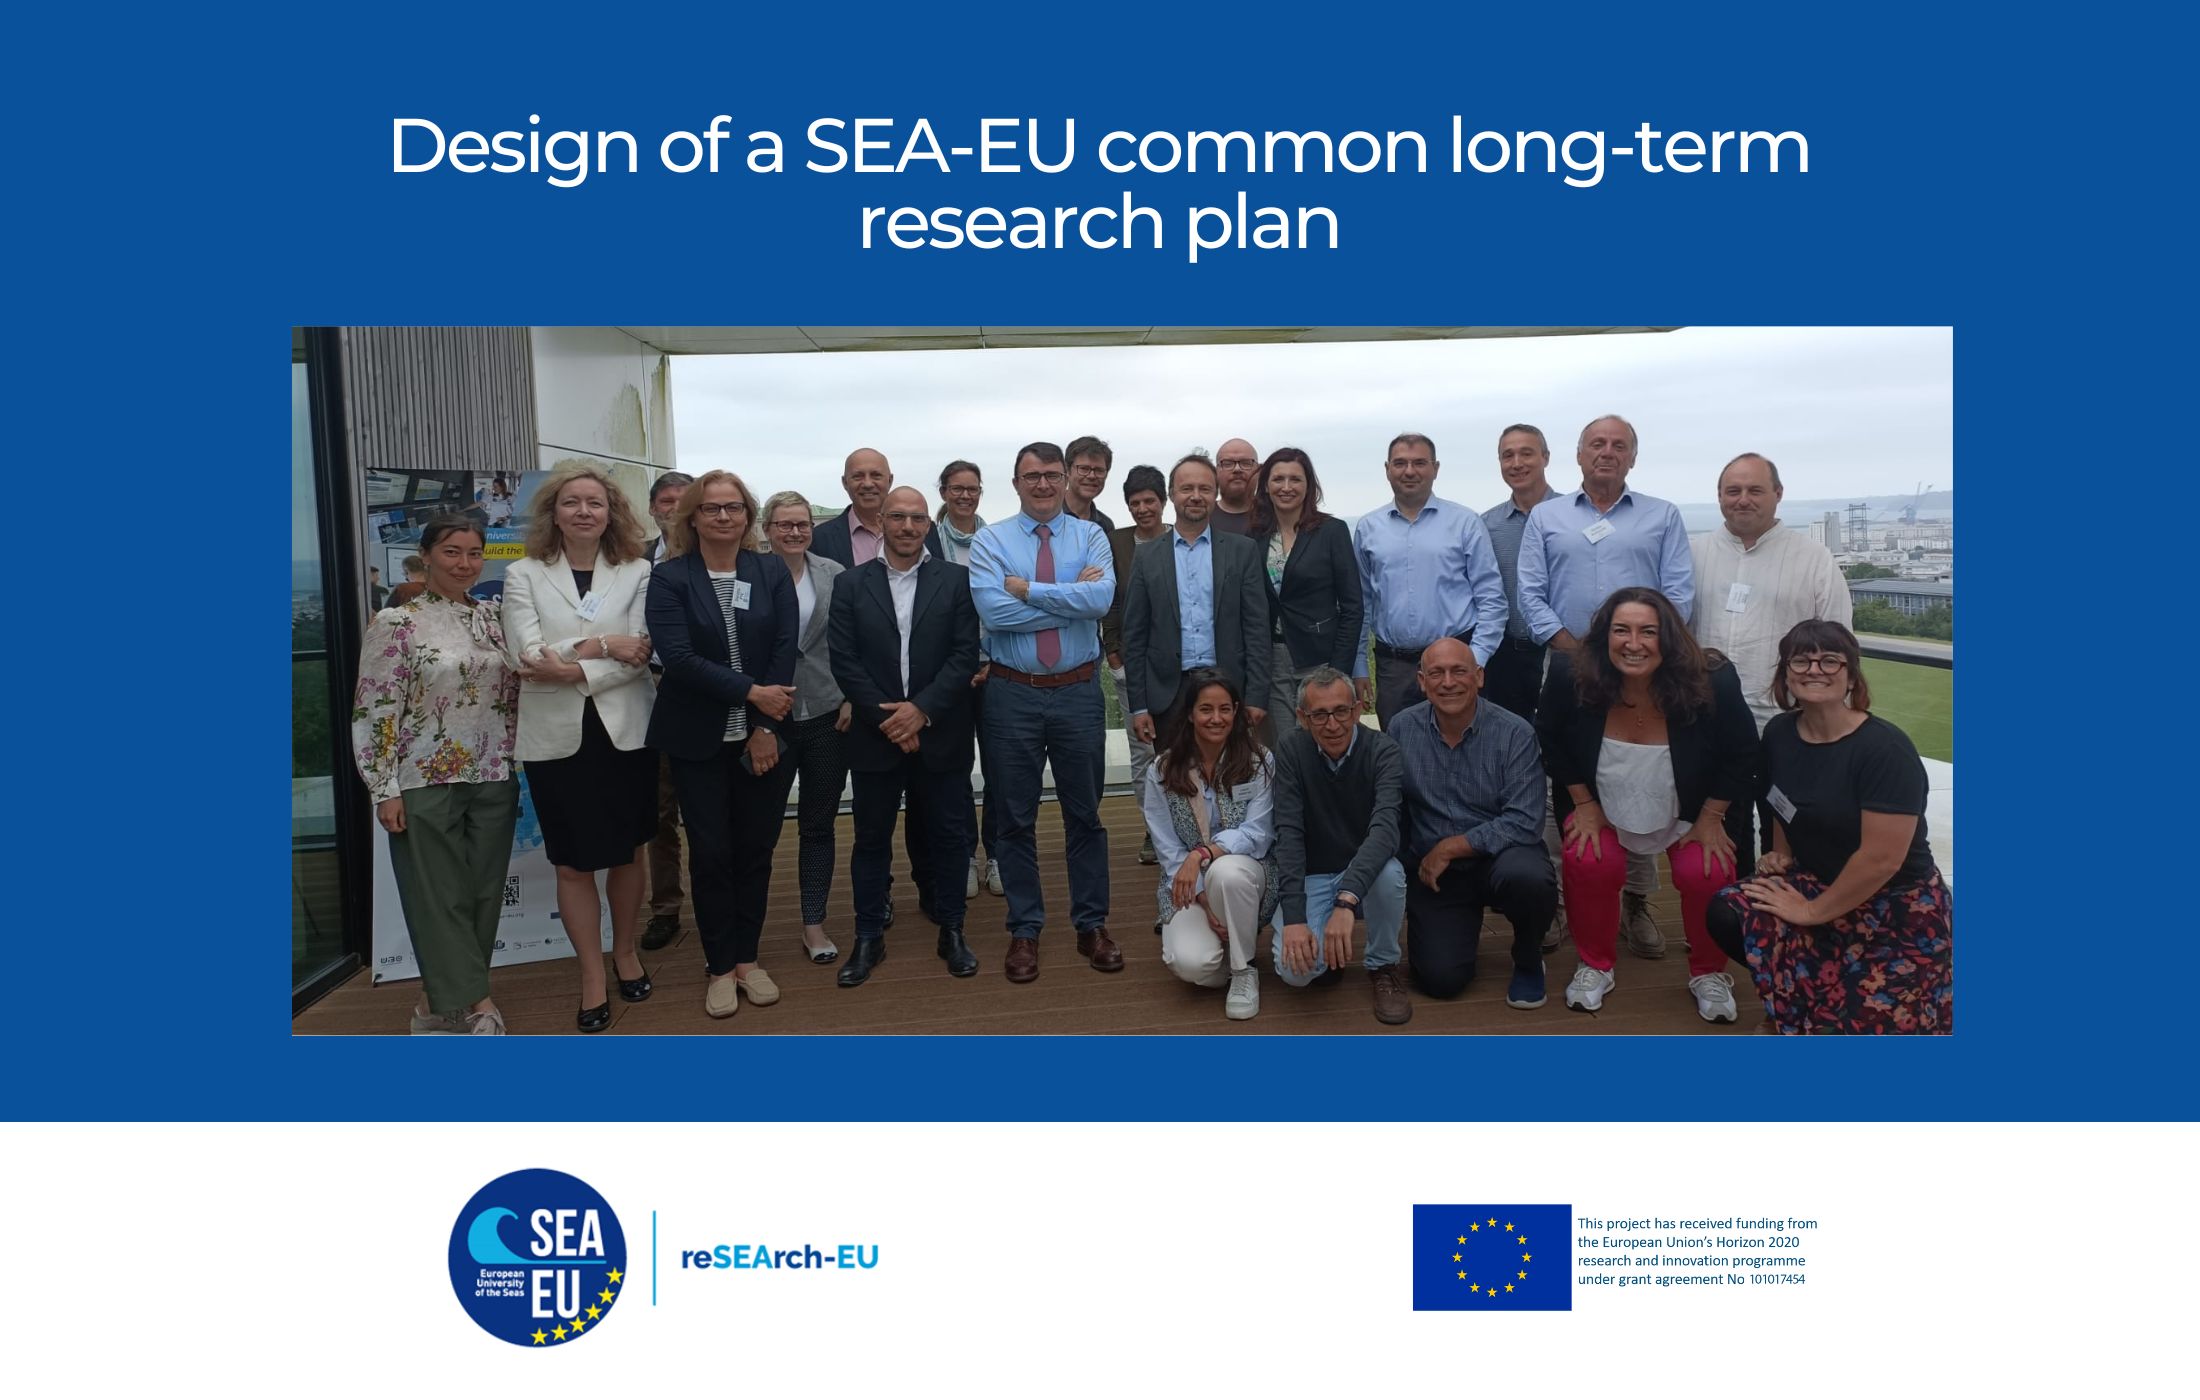 Design of a SEA-EU common long-term research plan